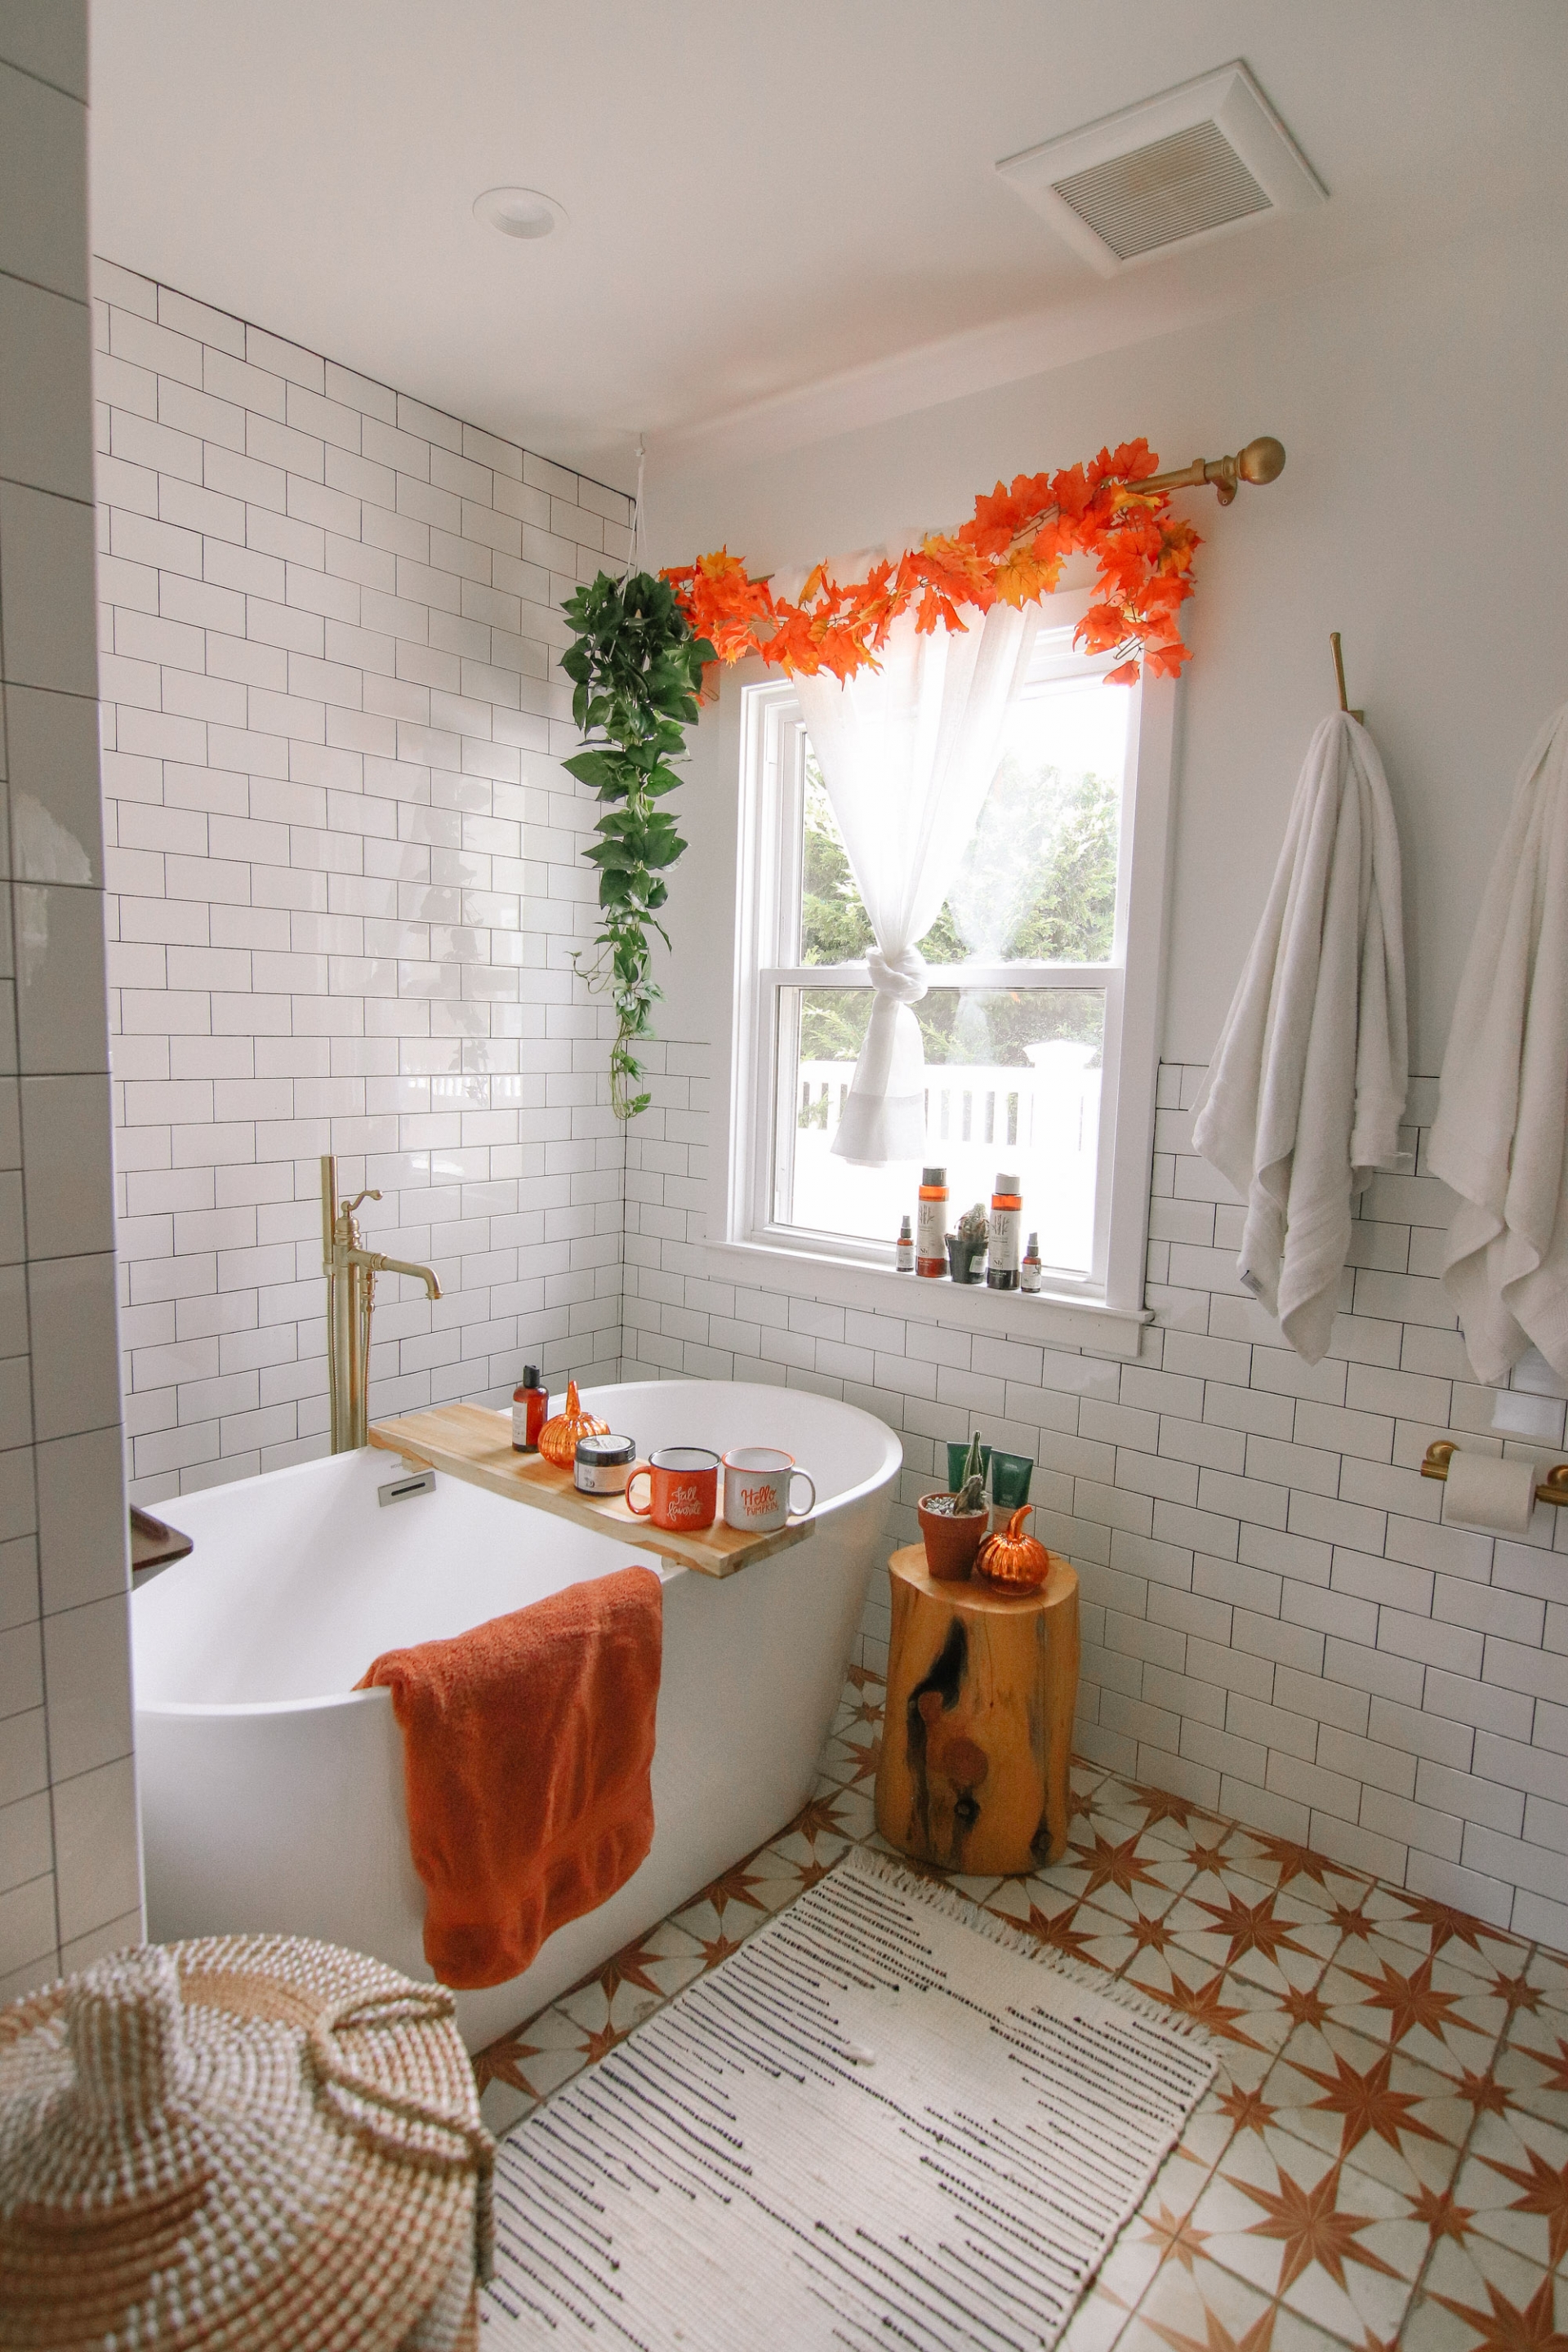 Nếu yêu thích sự năng động, bạn hãy thay thế gam màu trung tính bằng sắc cam rực rỡ như phòng tắm này. Cửa sổ, sàn nhà, khăn tắm, ly tách đều vô cùng nổi bật.